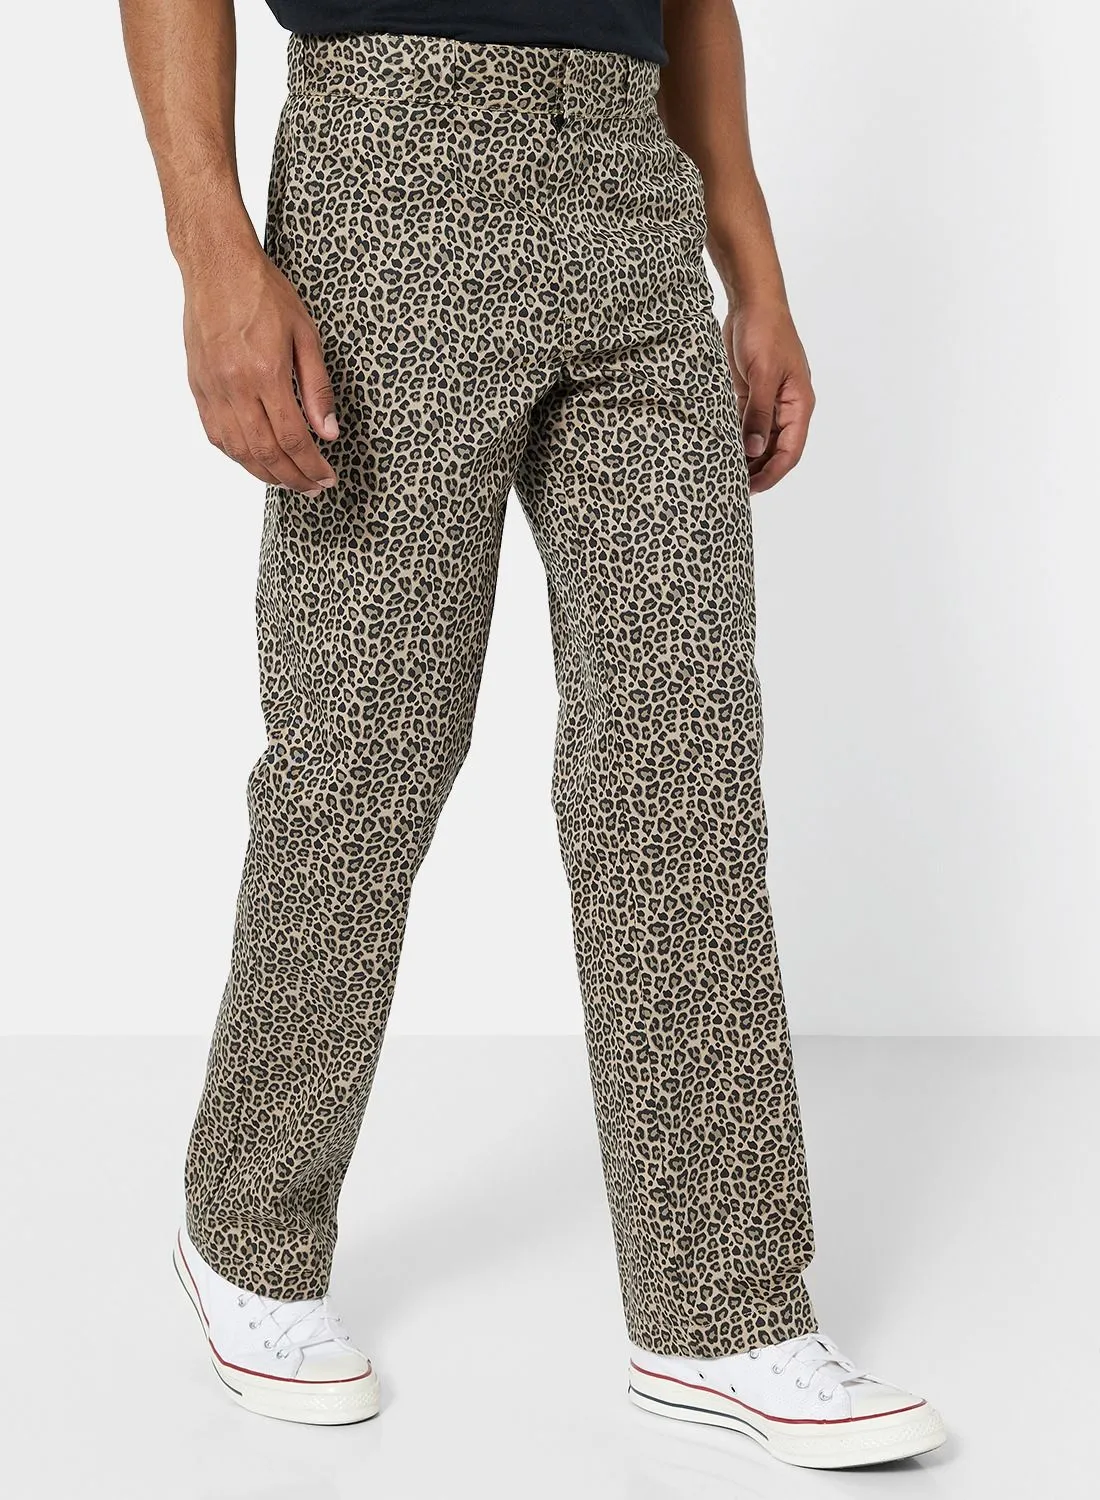 Dickies Leopard Print Pants